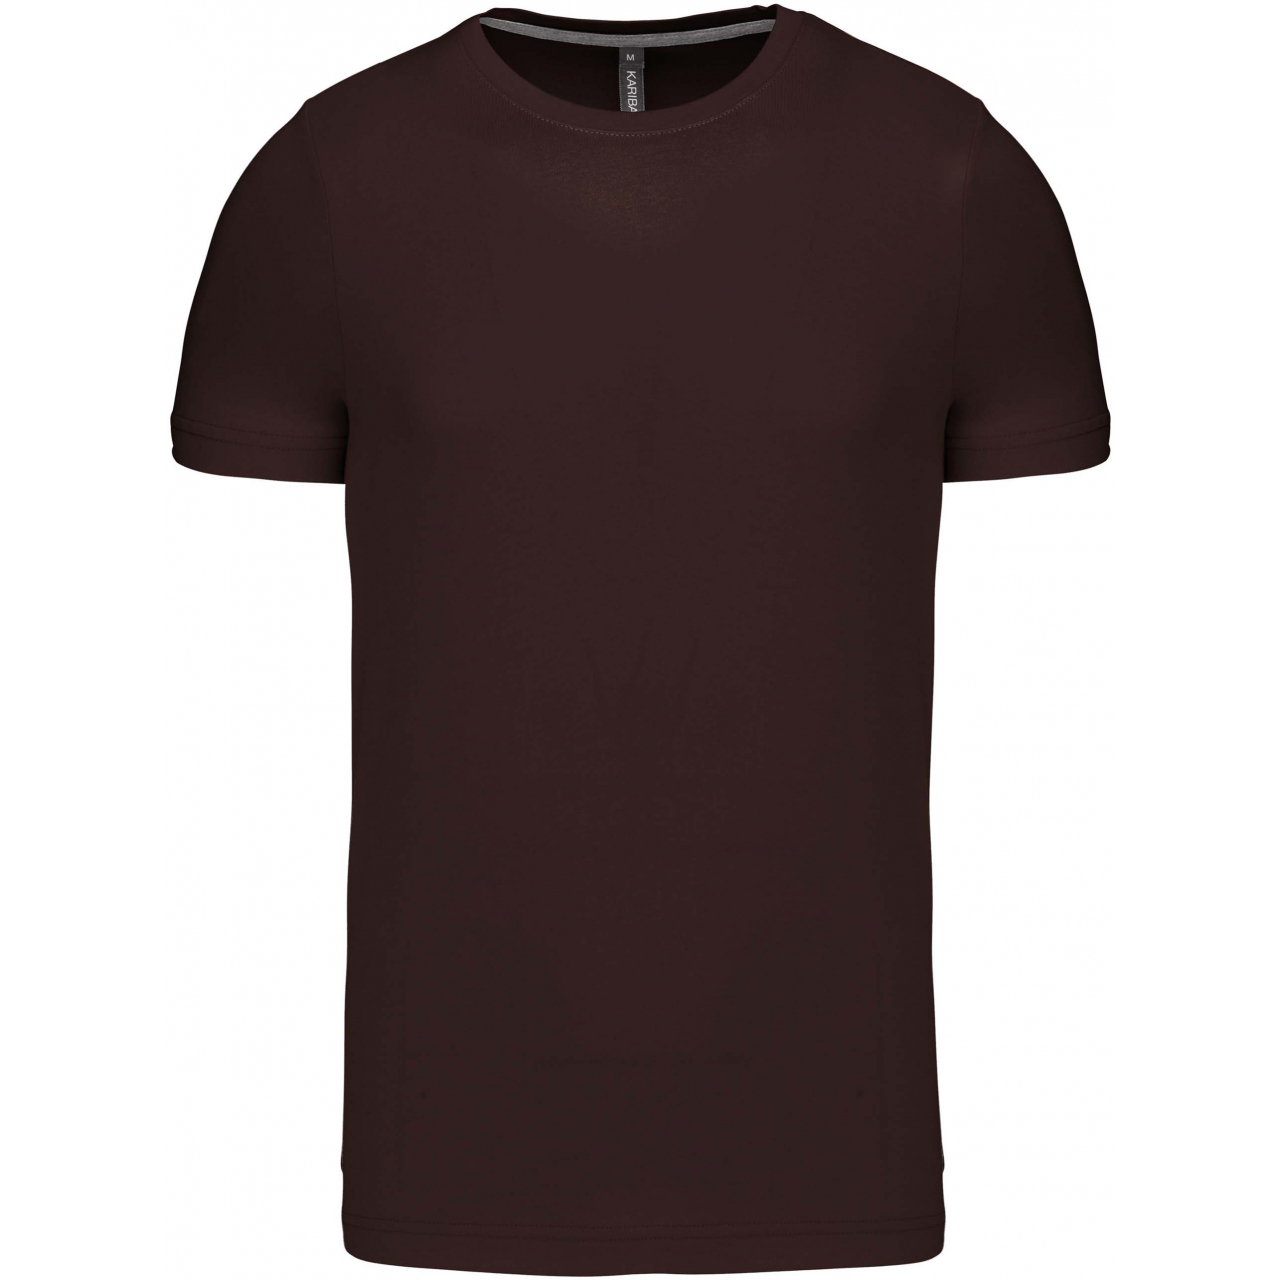 Pánské tričko Kariban krátký rukáv - hnědé, XL